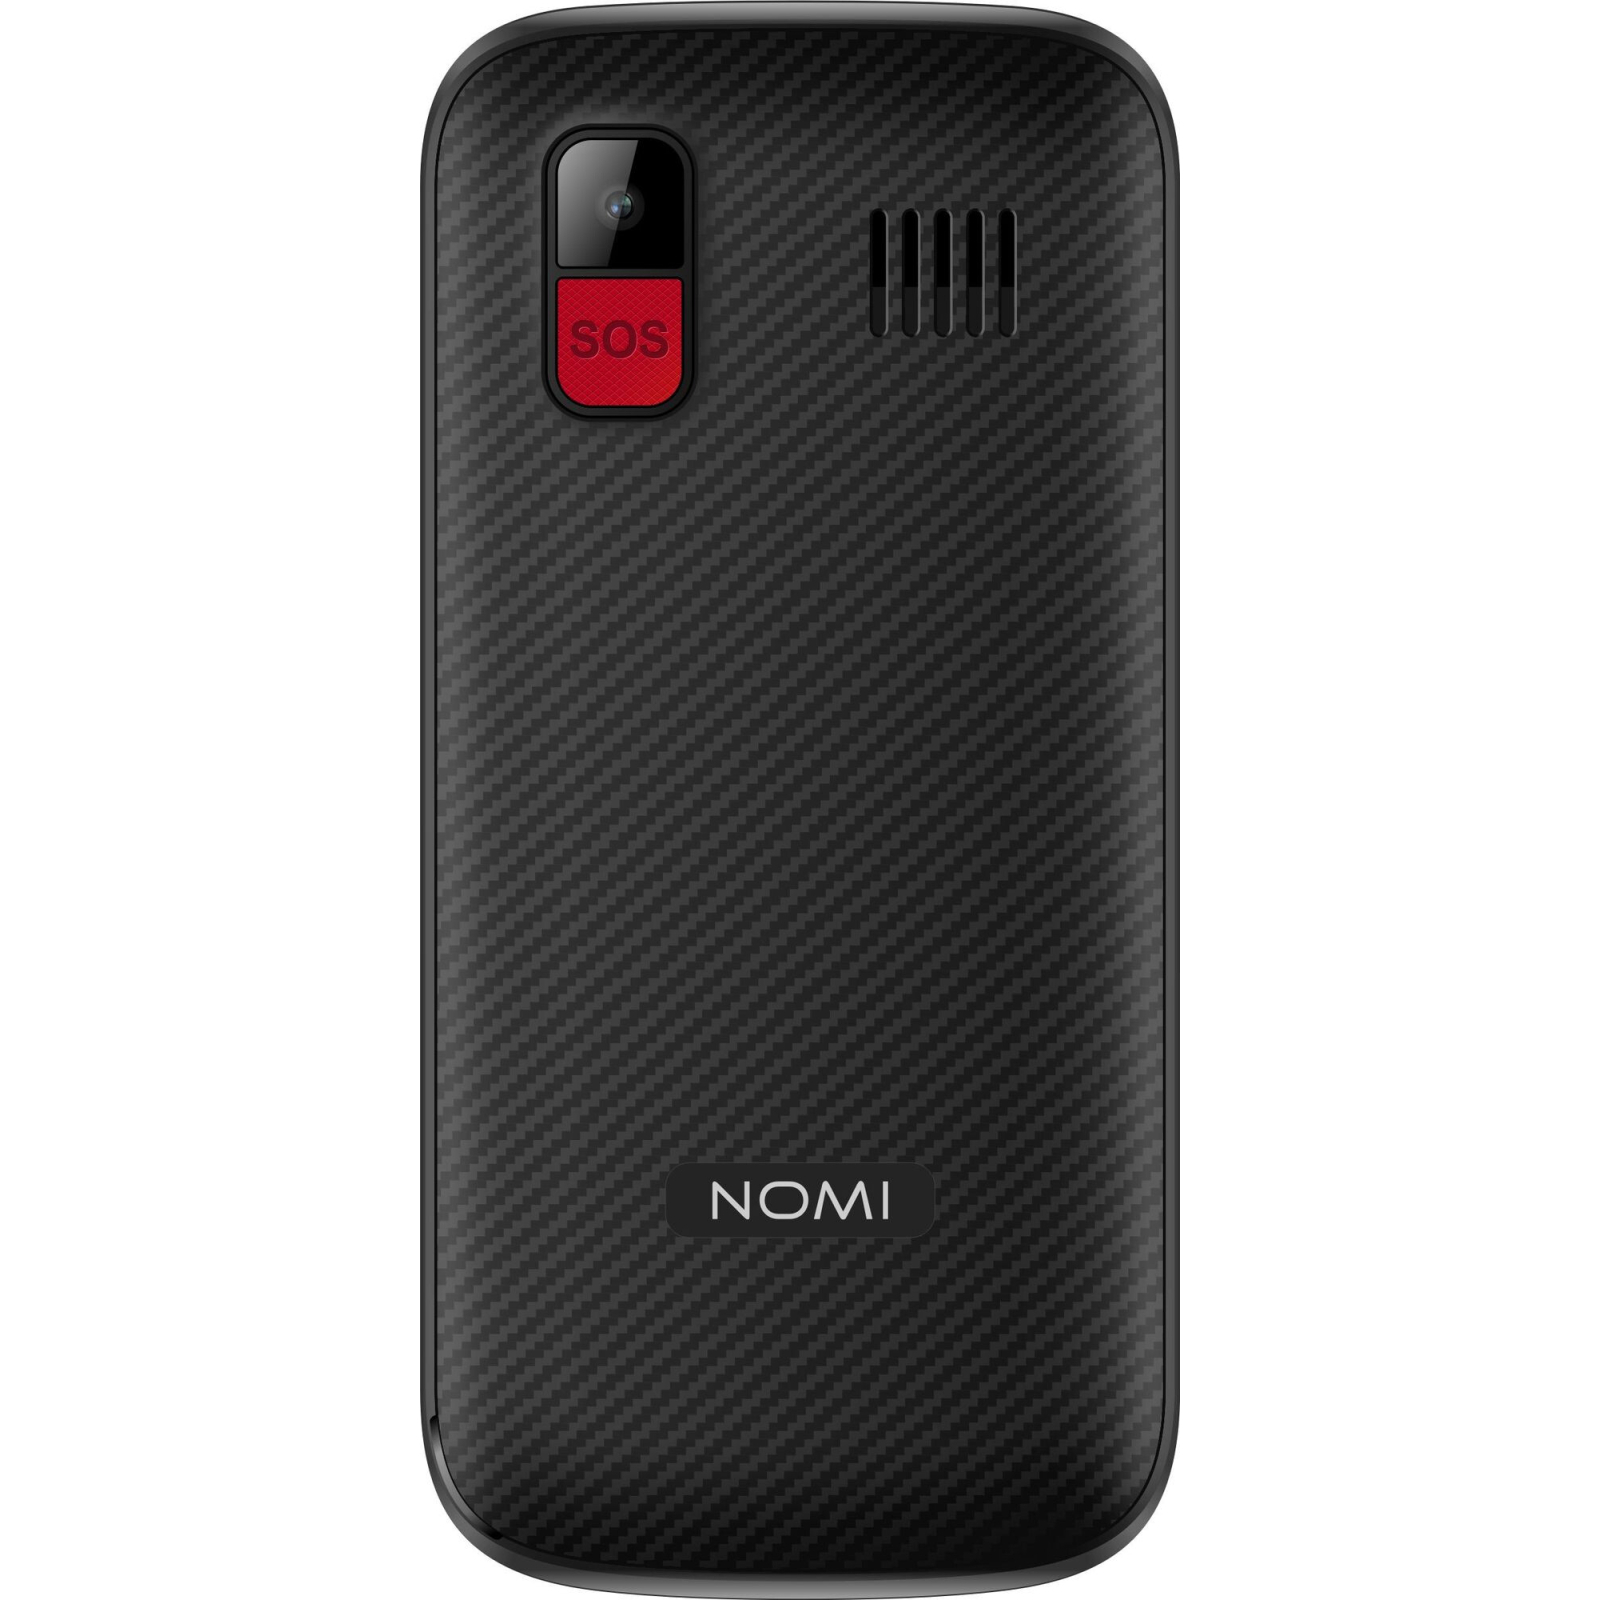 Мобильный телефон Nomi i220 Red изображение 4